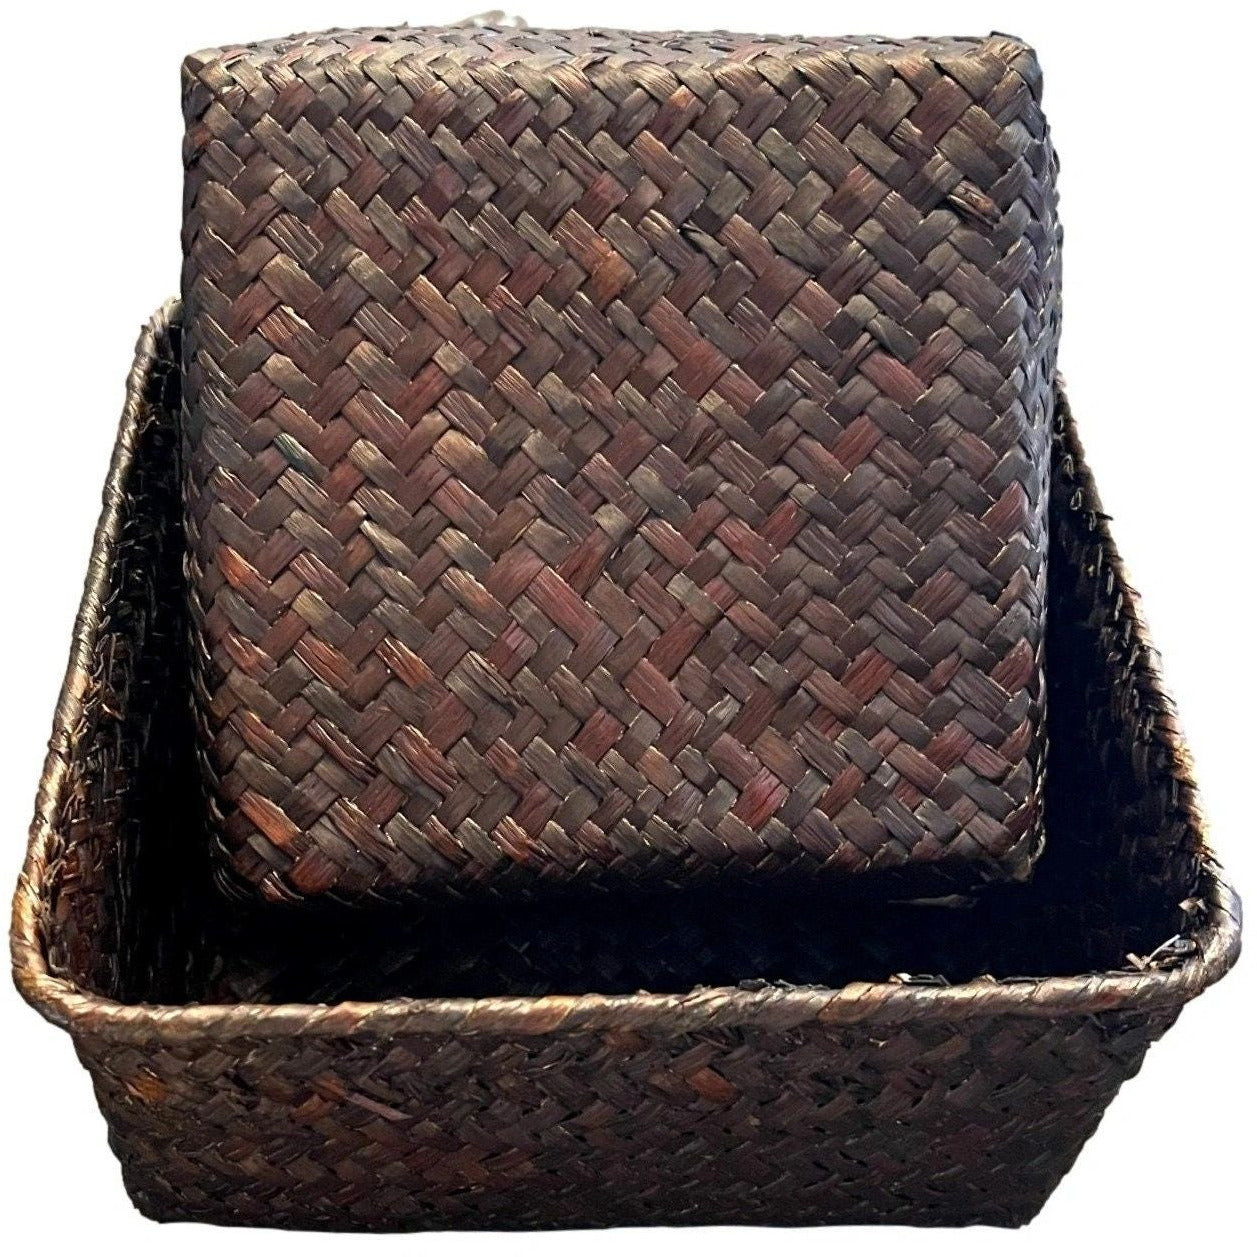 Mahogany Set of 2 Storage Baskets